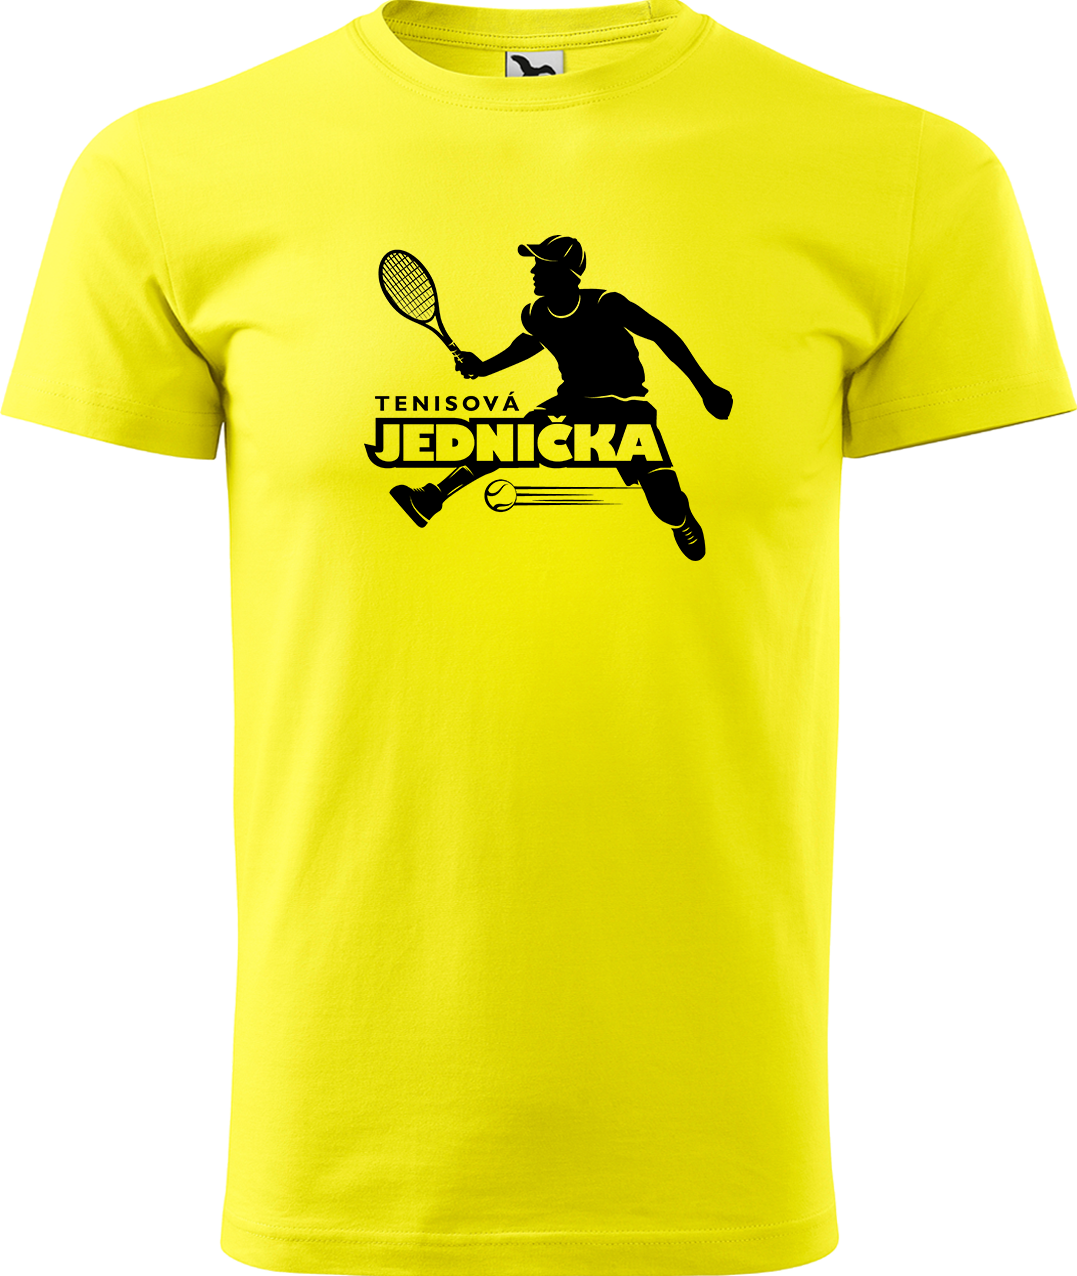 Tenisové tričko - Tenisová jednička Velikost: S, Barva: Žlutá (04)